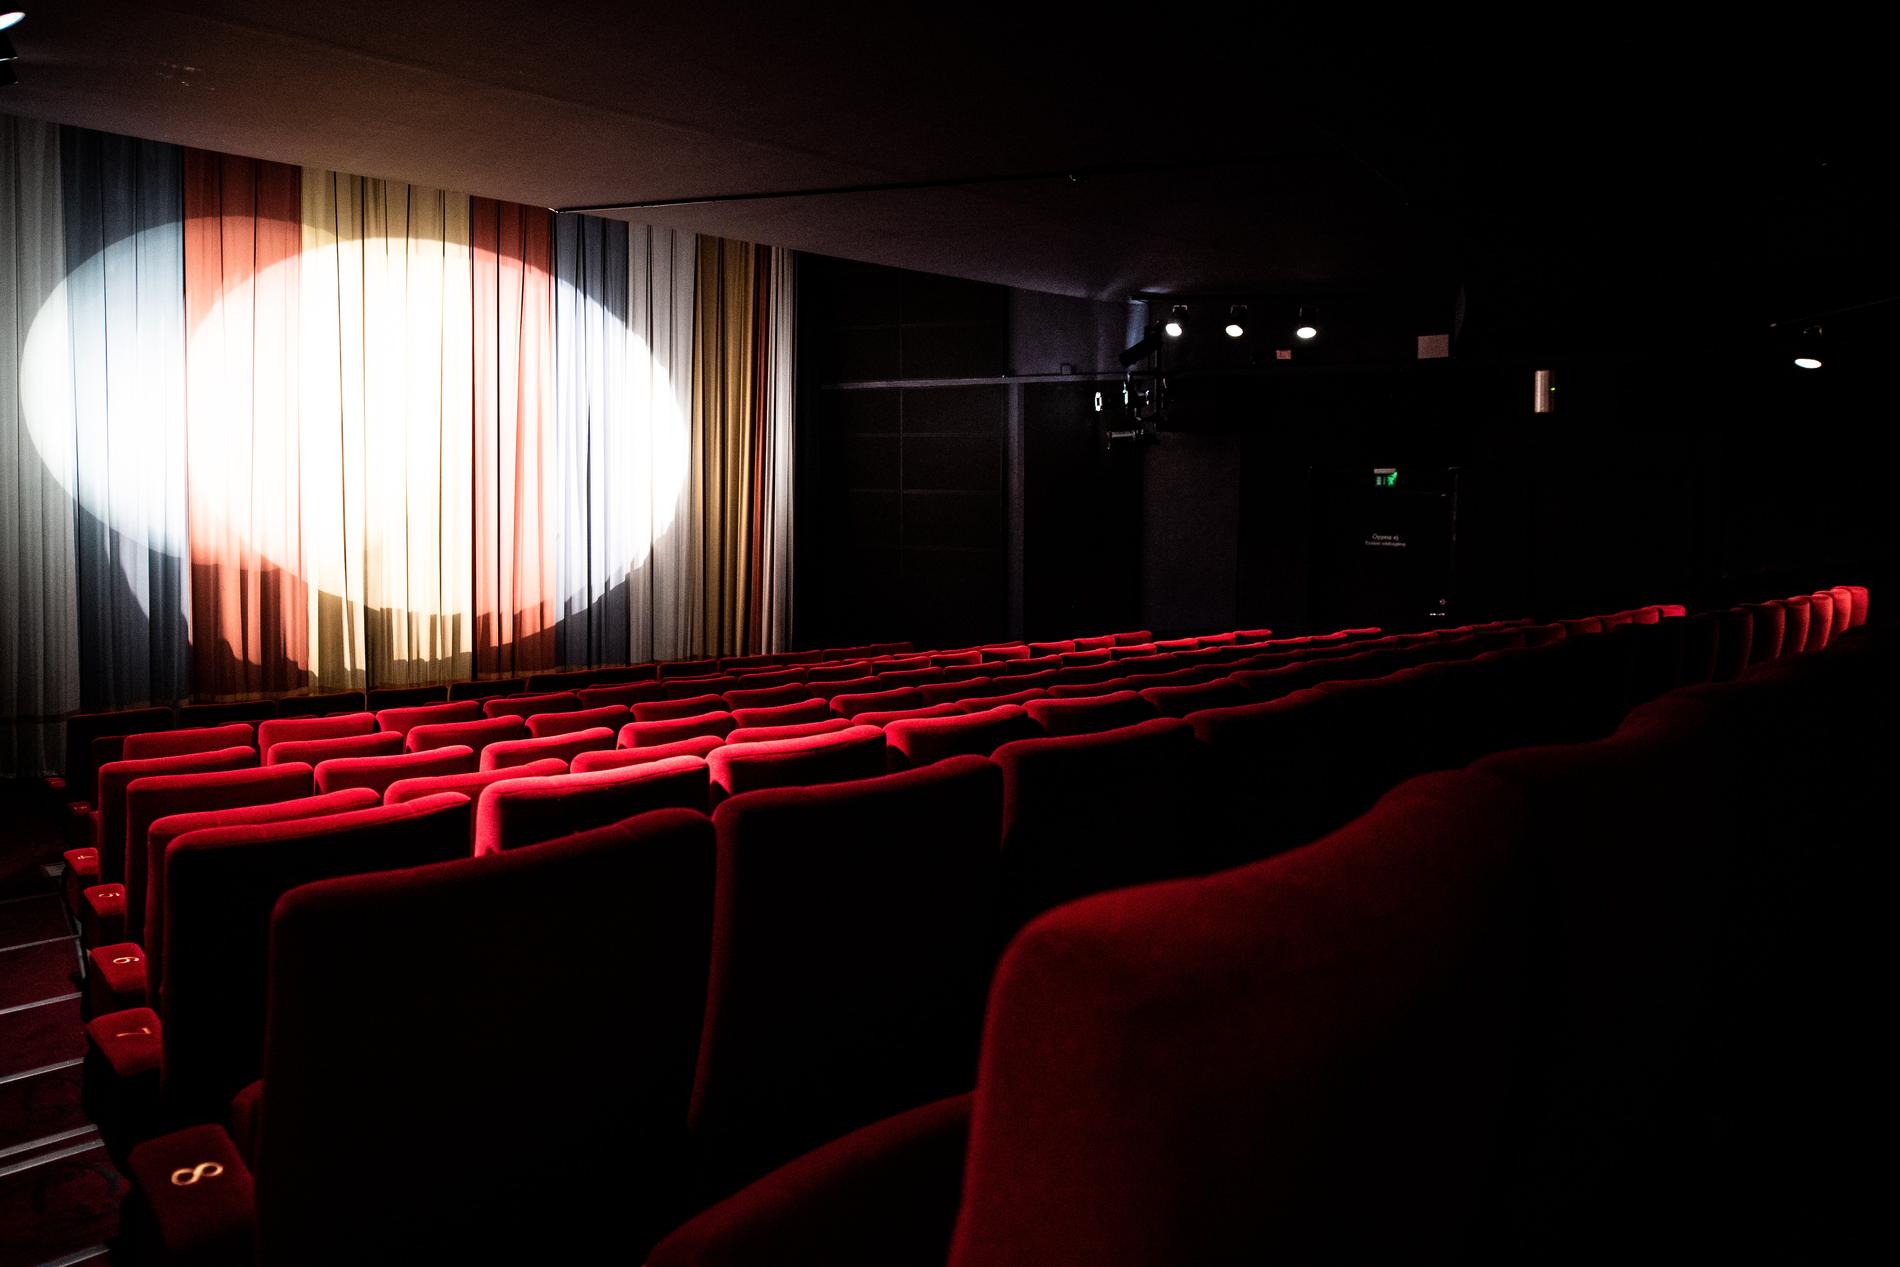 Svenska filmer lockade få besökare på bio. Arkivbild.